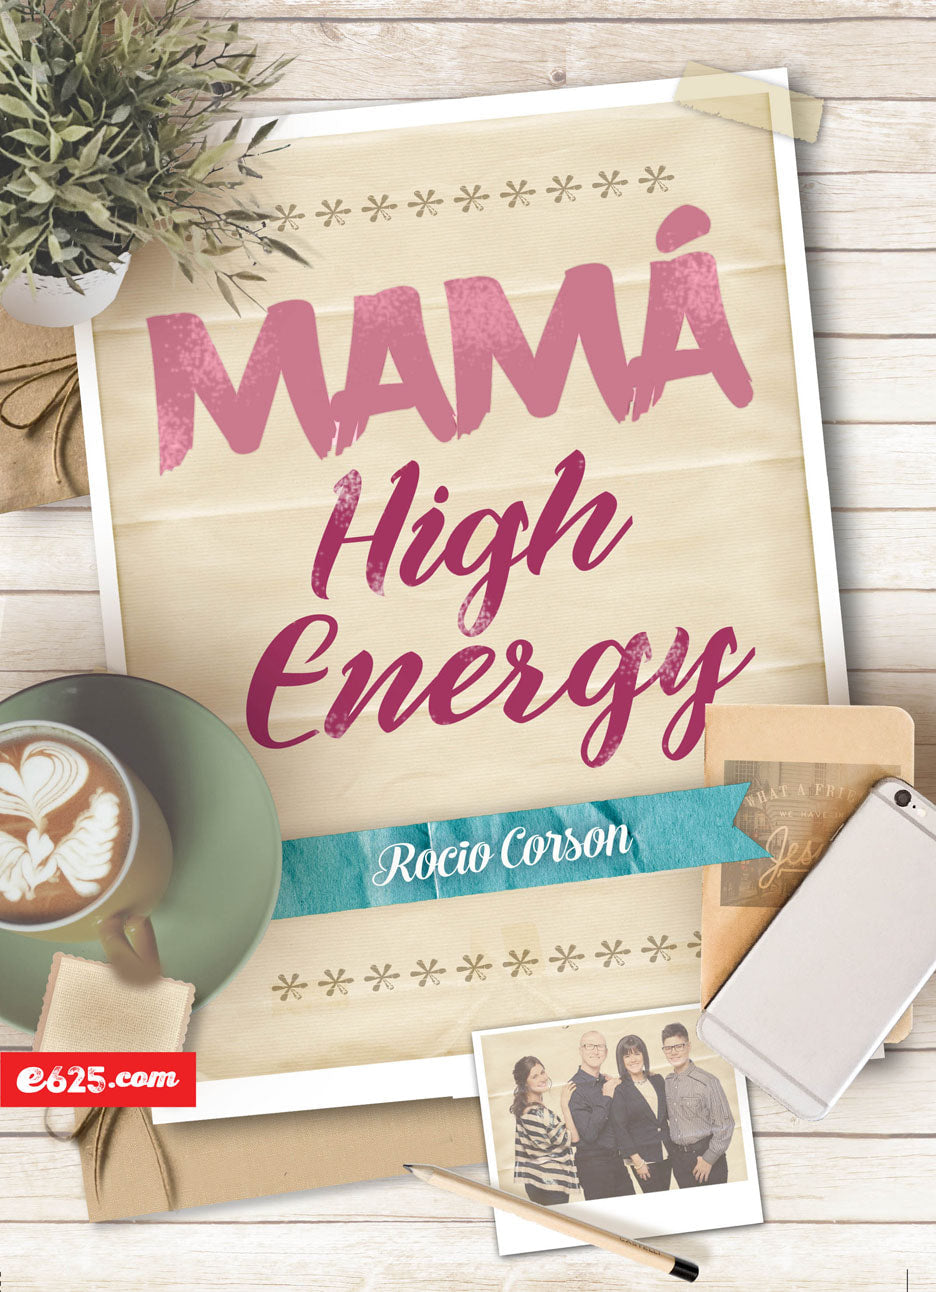 Mamá High Energy - Rocio Corson